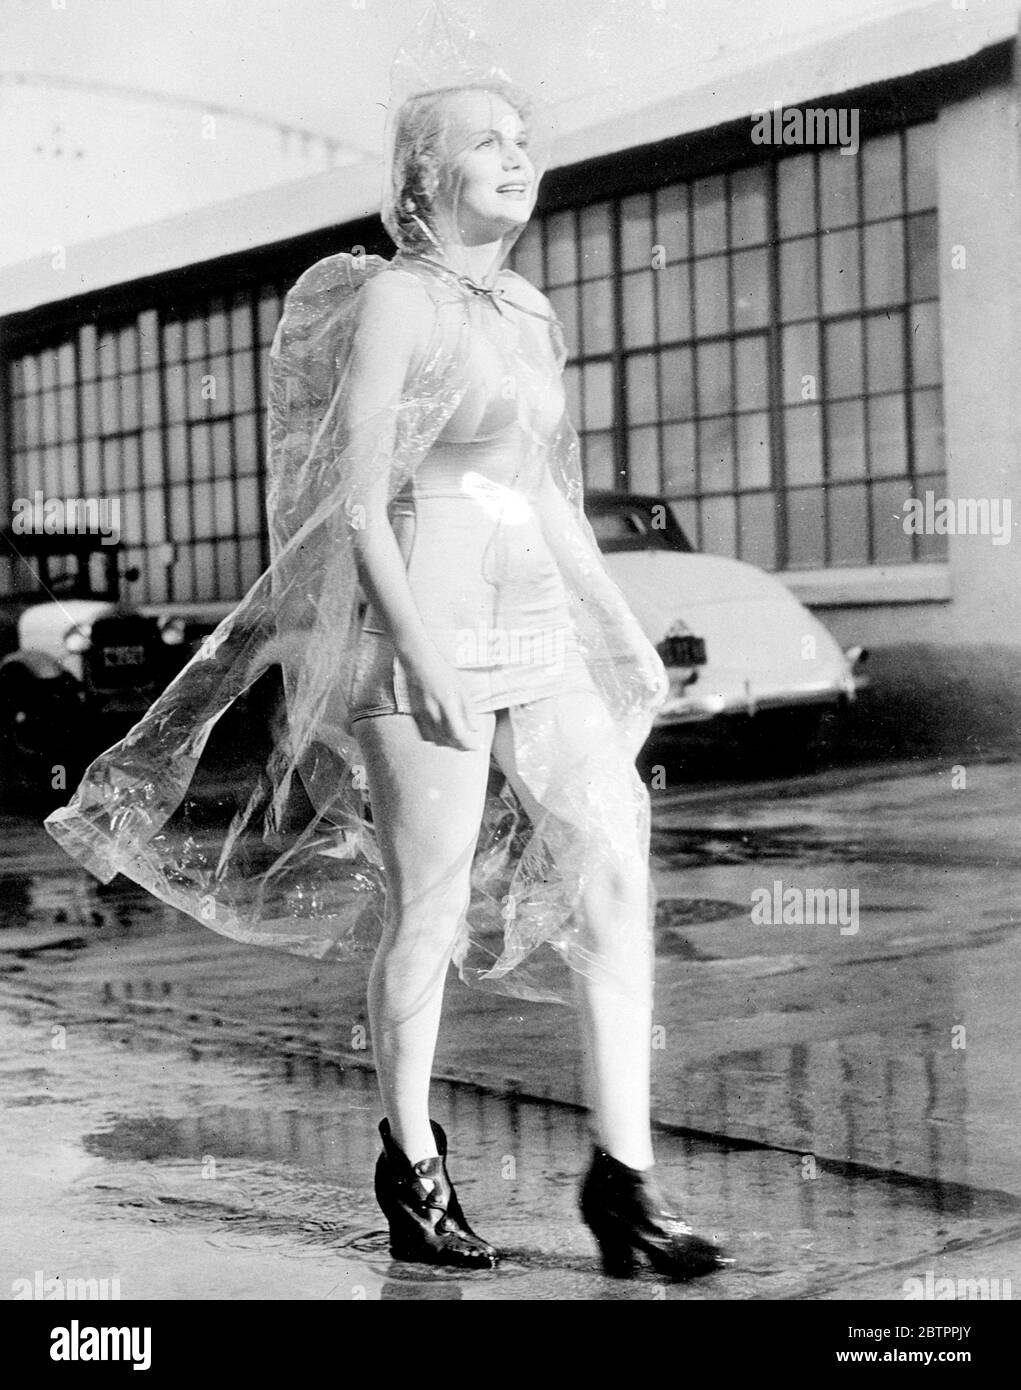 Der Wettermann hat das nicht durchgesehen! Marie Wilson, die Hollywood-Schauspielerin, schützt ihr modisches Badekleid mit diesem neuartigen Wet Weather Kostüm aus Zellophan. Ein Paar Galoschen komplettieren das Outfit. Kaliforniens kürzlich heftige Regenfälle inspirierten das neue Kostüm Stockfoto